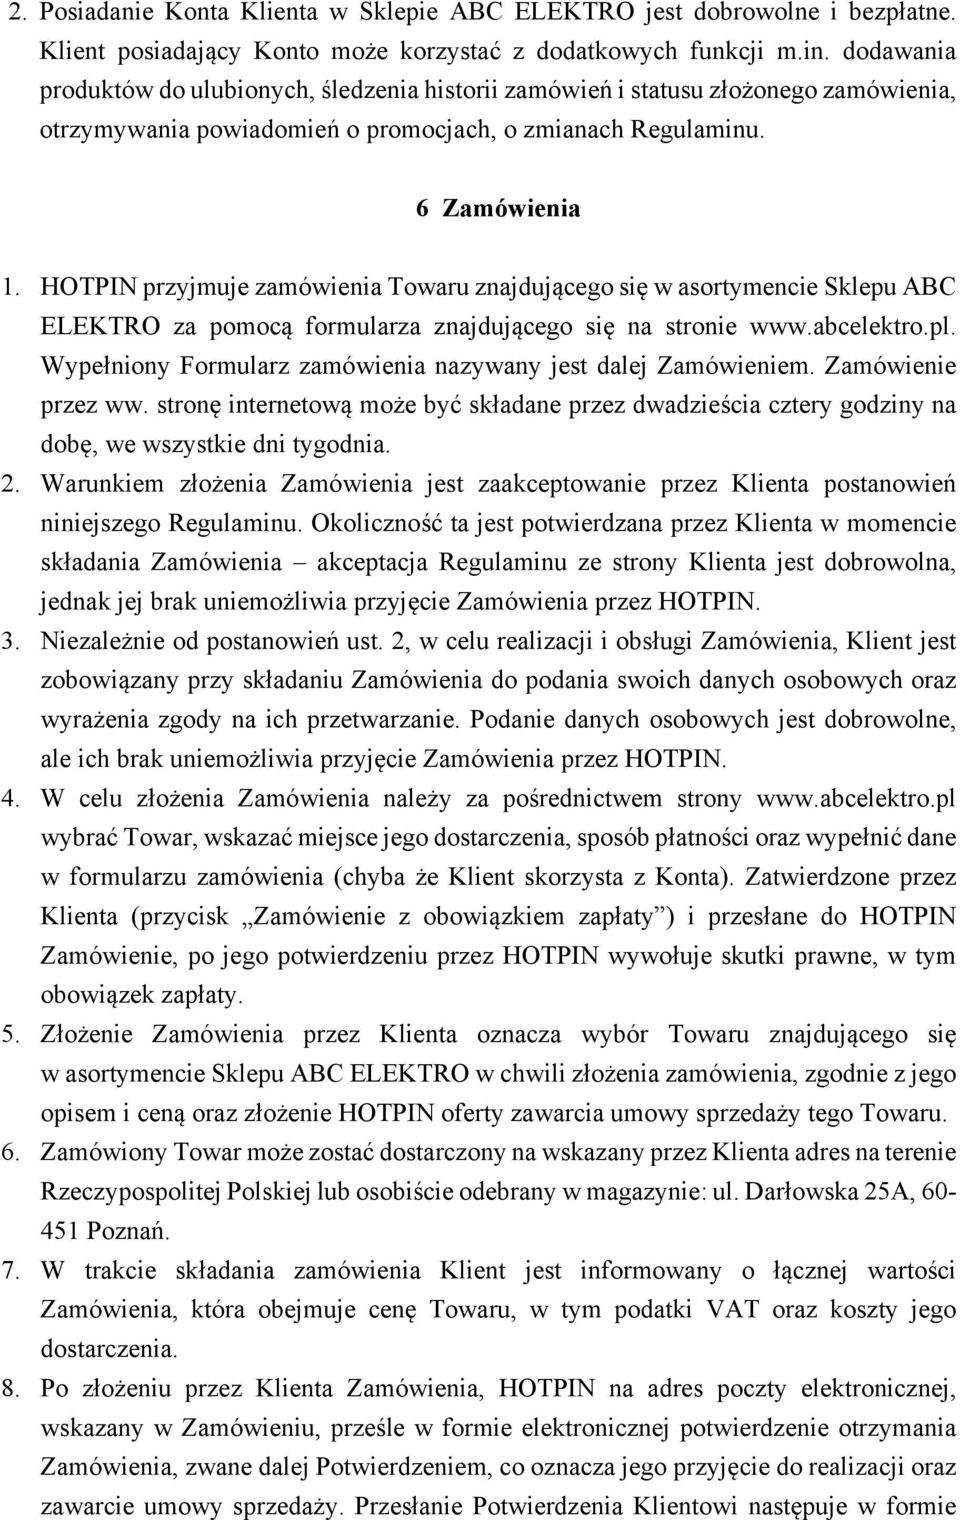 HOTPIN przyjmuje zamówienia Towaru znajdującego się w asortymencie Sklepu ABC ELEKTRO za pomocą formularza znajdującego się na stronie www.abcelektro.pl.